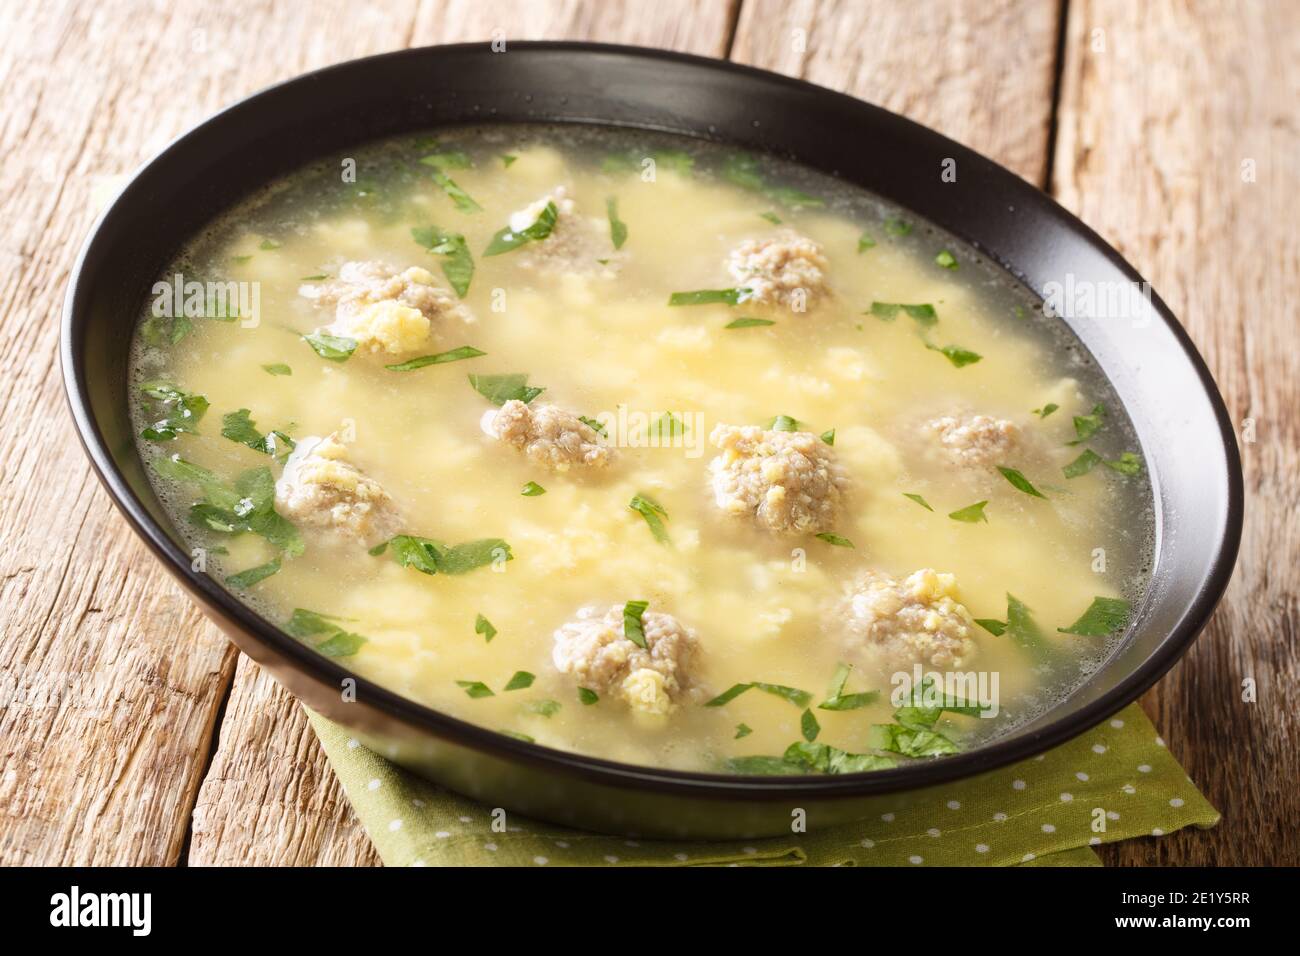 Soupe italienne festive de Pâques avec boulettes de viande, œufs, fromage en gros plan dans un bol sur la table. Horizontale Banque D'Images